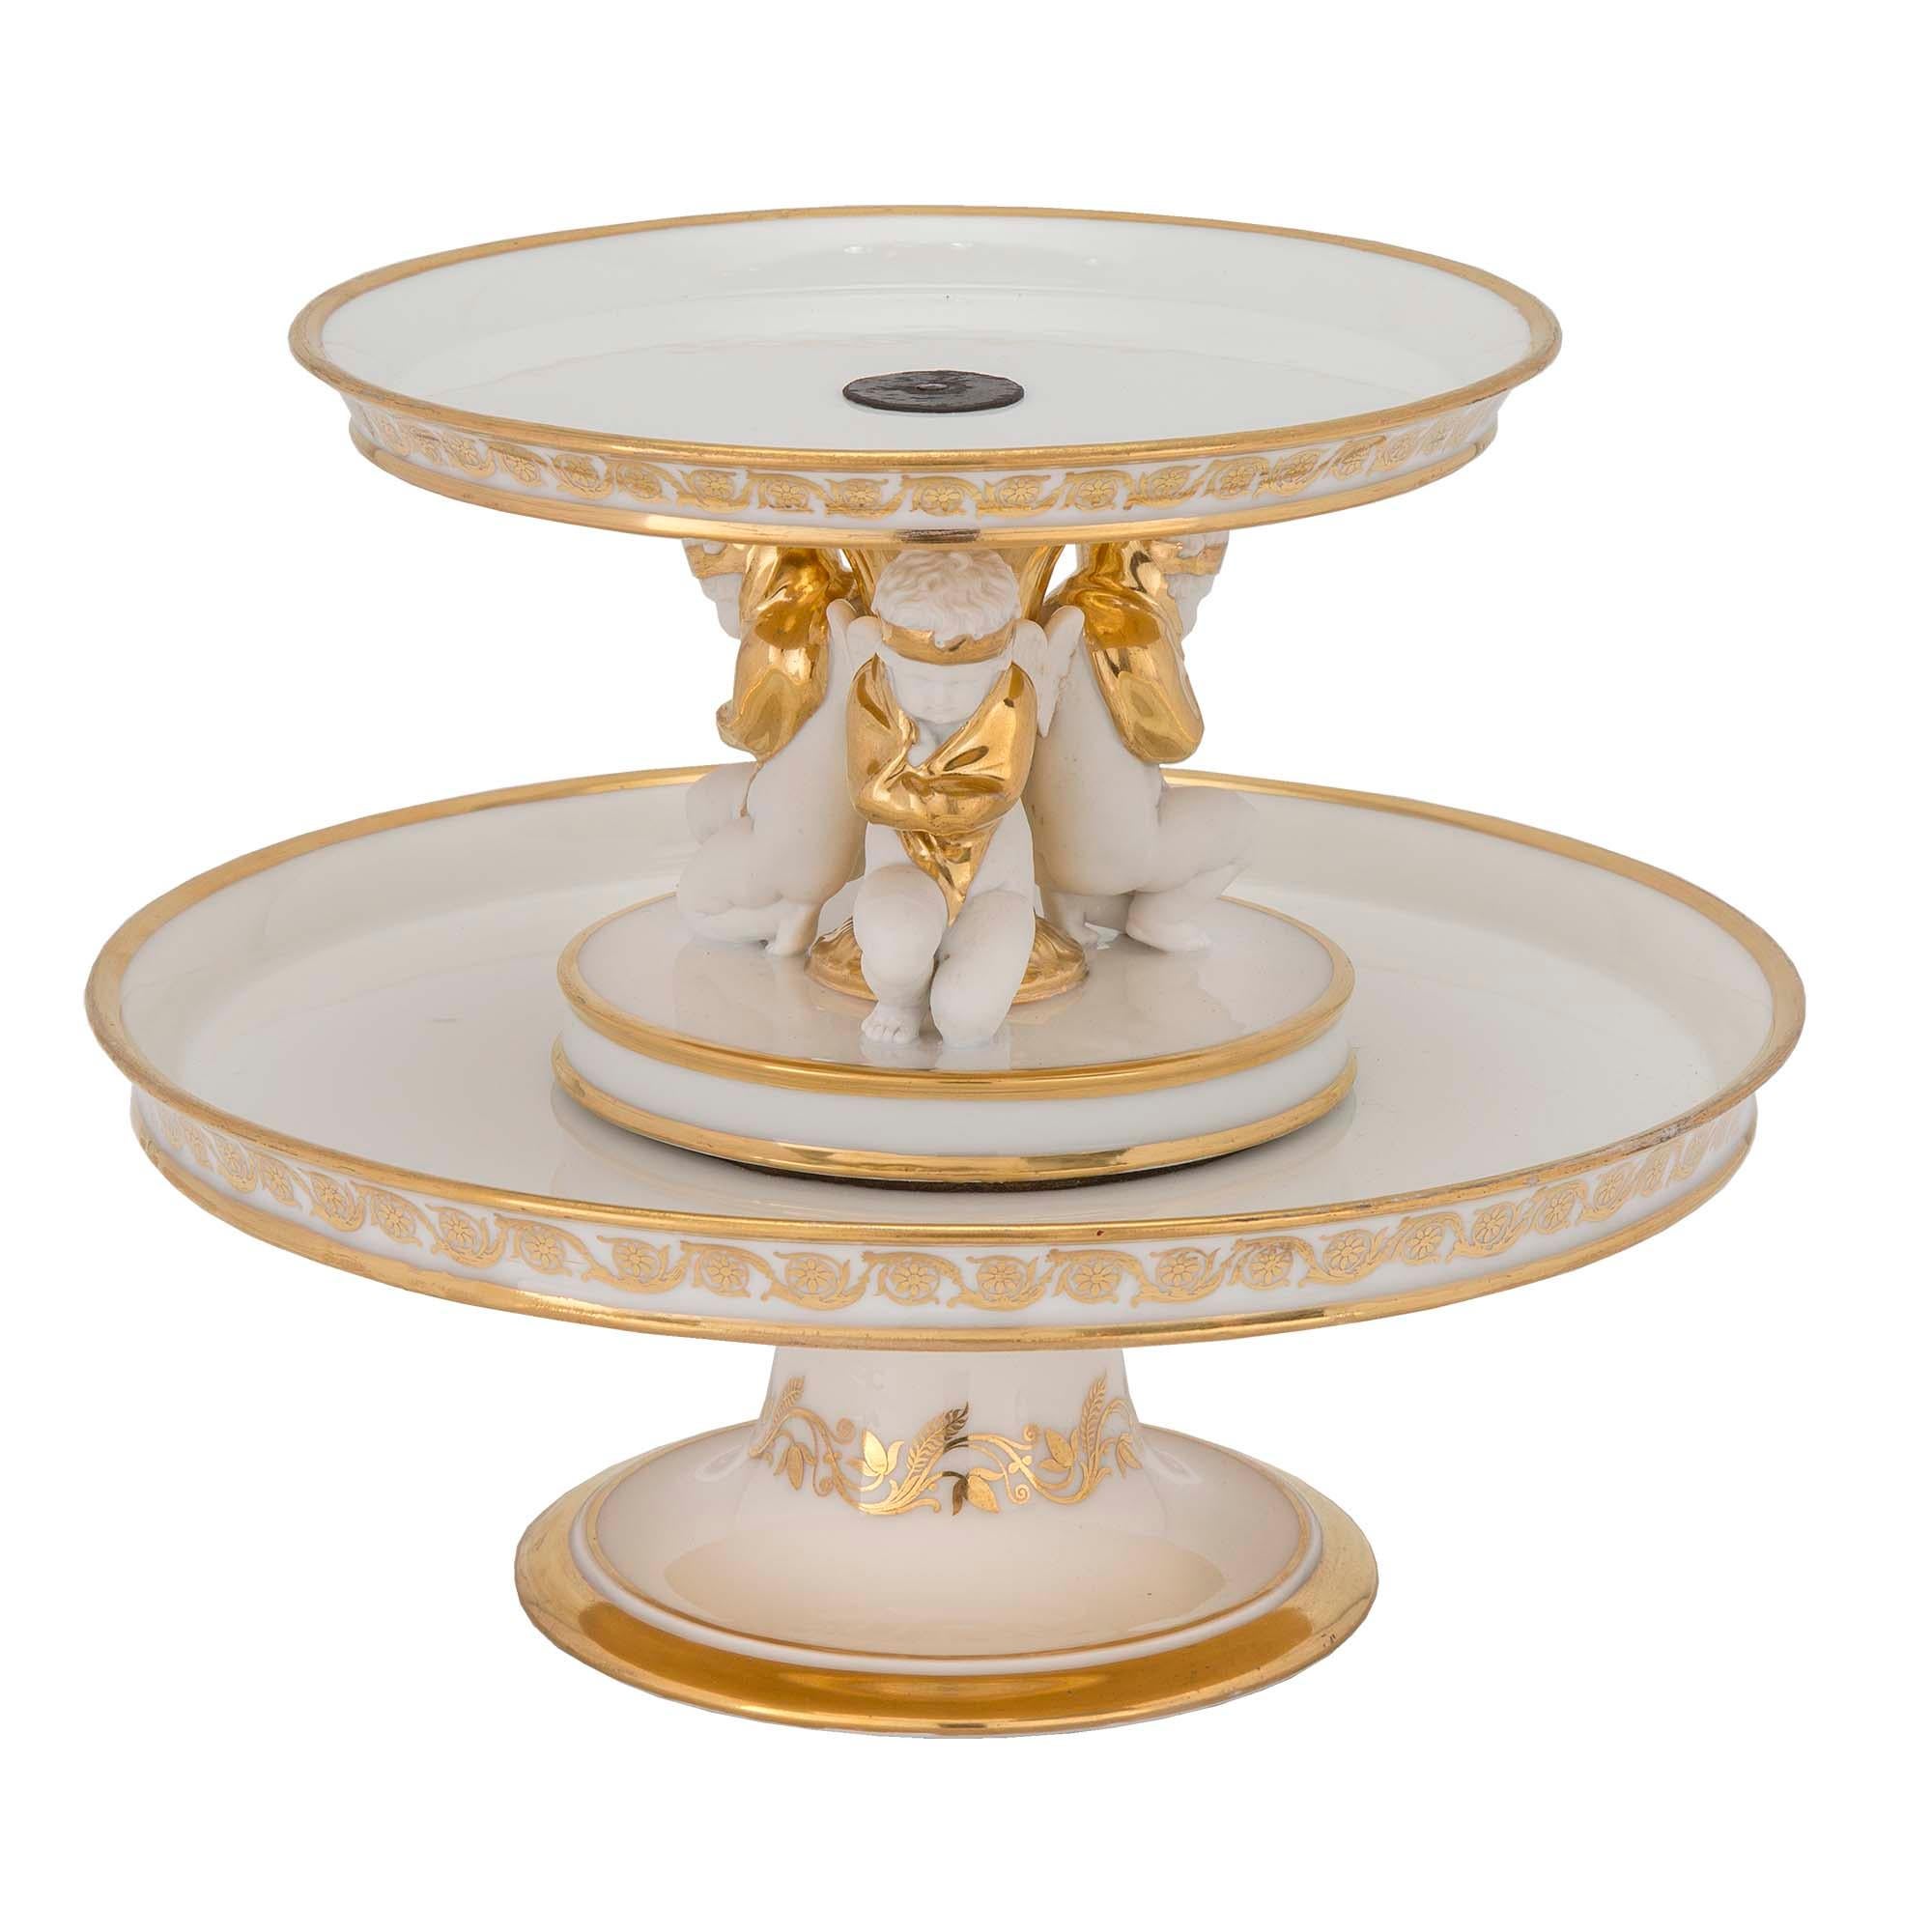 Ein äußerst elegantes Paar französischer neoklassischer St. des 19. Porcelain de Paris und vergoldet, zwei tiered Presentoirs. Jede wird von einem runden Sockel mit vergoldetem Band und feinem Blattmuster getragen. Jede Etage zeigt wundervolle